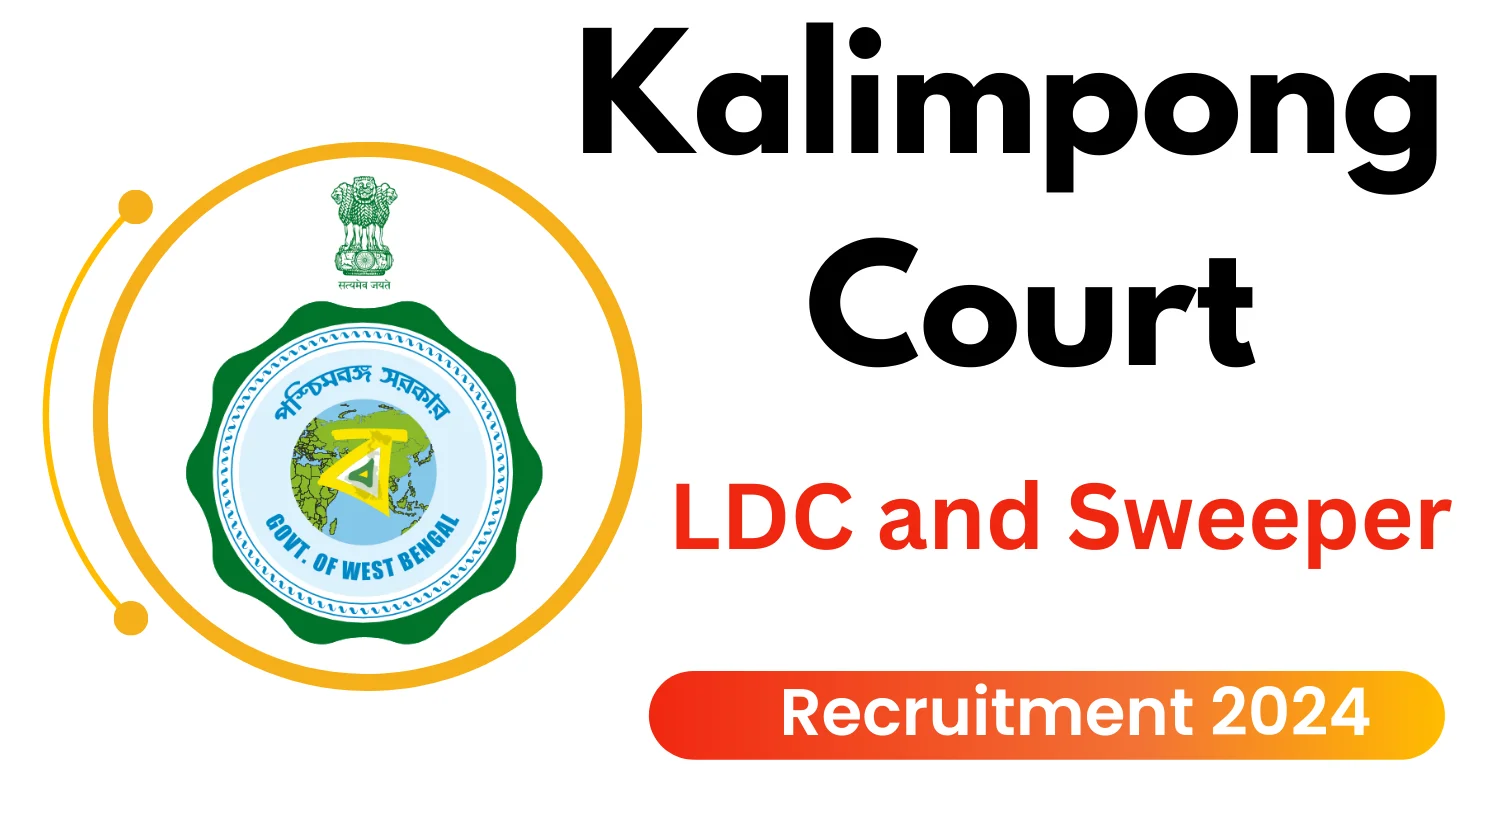 Kalimpong Court Recruitment 2024